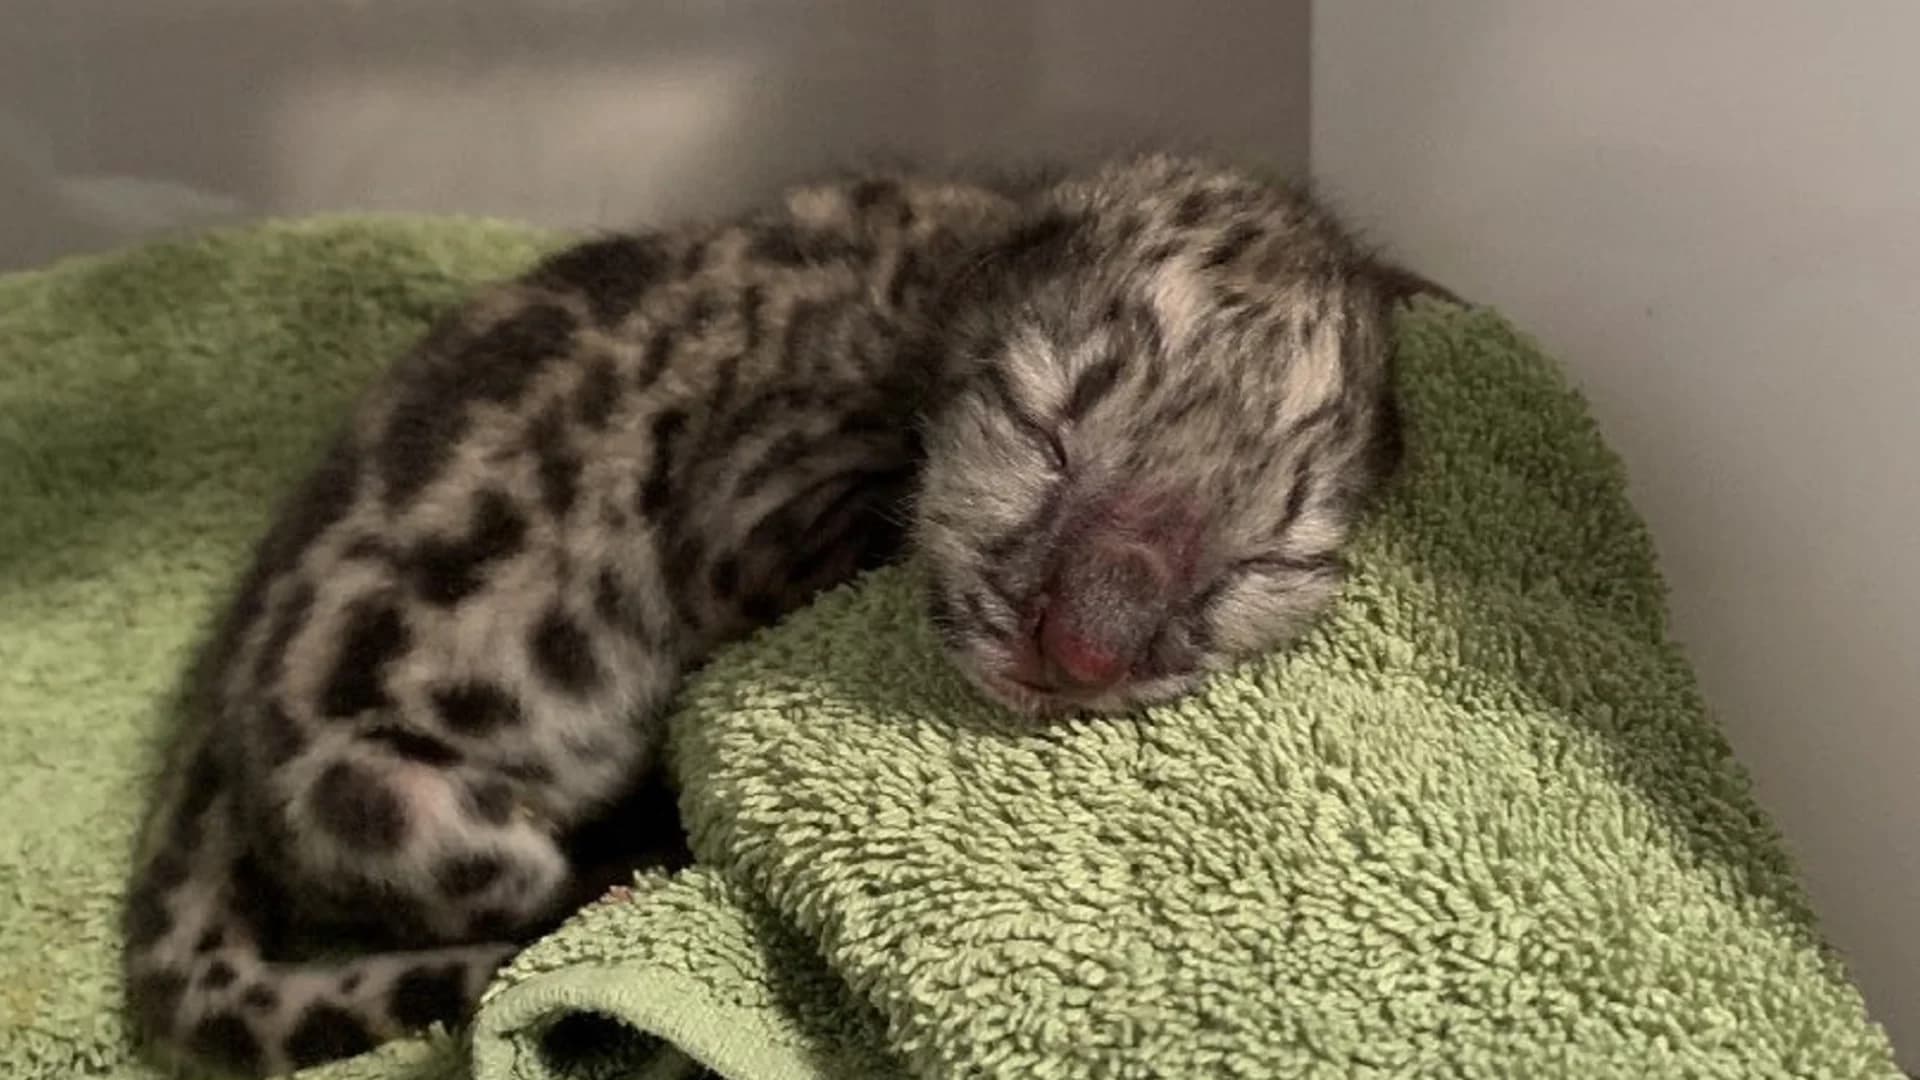 Snow leopard cub born in upstate New York zoo making ‘good progress’